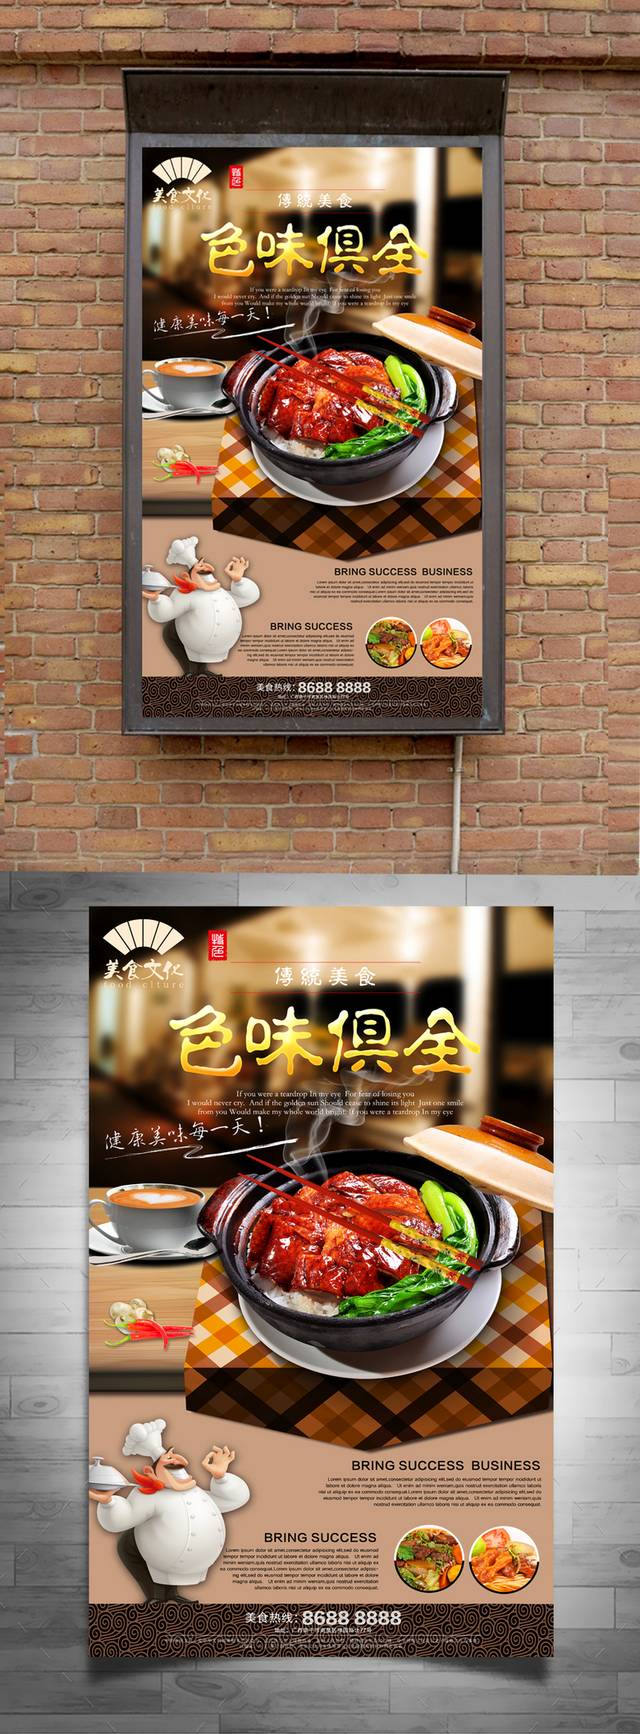 经典鹅美食宣传海报设计